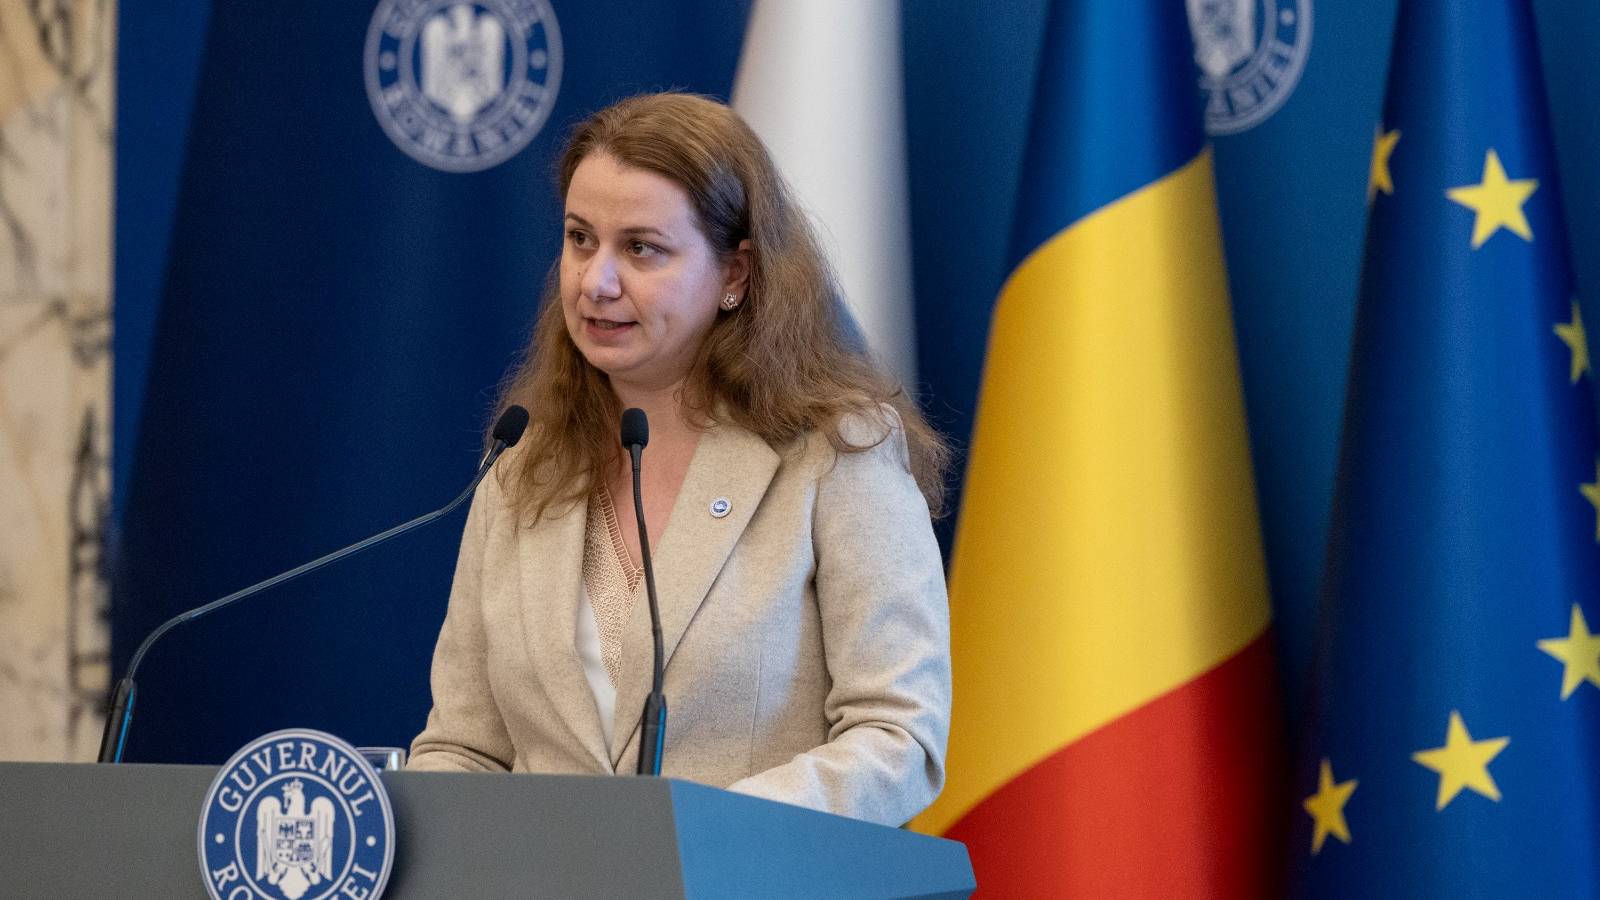 Utbildningsminister Officiellt meddelande Utbildningsåtgärder SISTA ÖKONOMISKT Rumänien